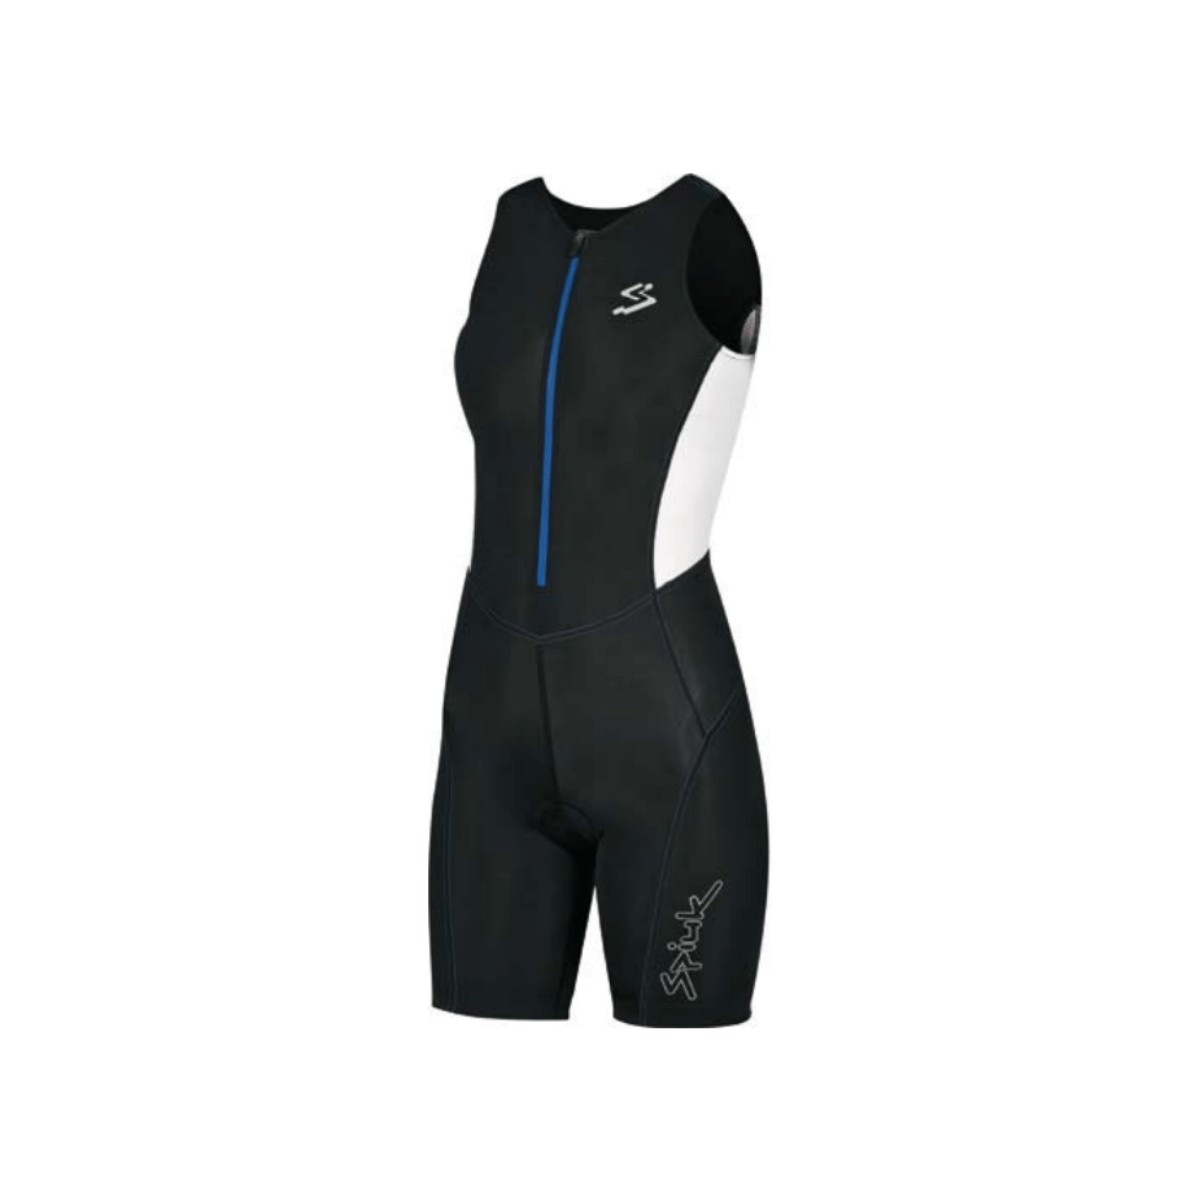 Trisuit de corrida feminino Spiuk preto azul, Tamanho XS.